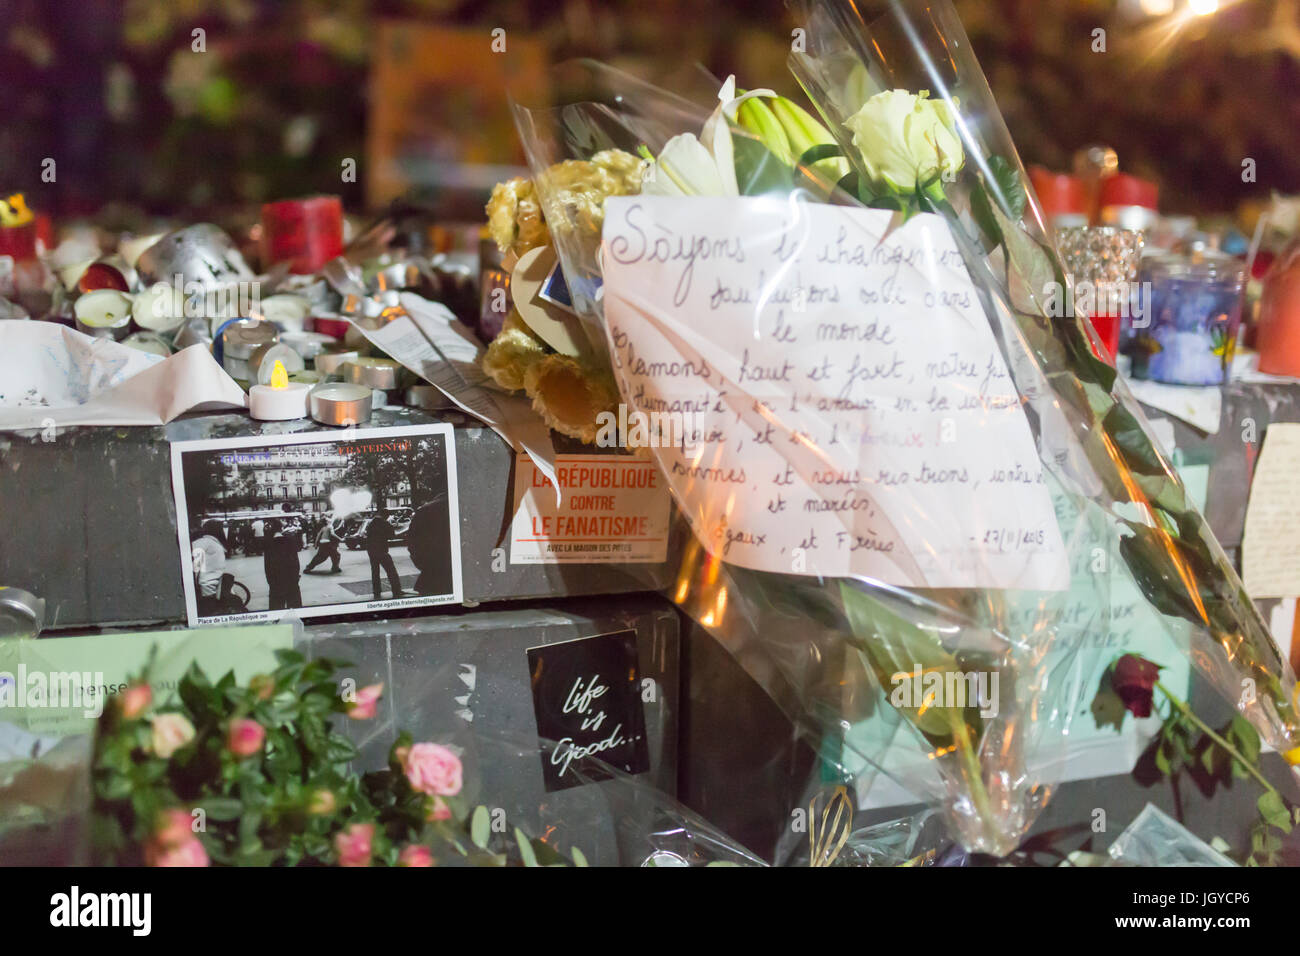 La Republique contre le fanatisme das Leben ist gut. Spontane Hommage an die Opfer der Terroranschläge in Paris, den 13. November 2015. Stockfoto